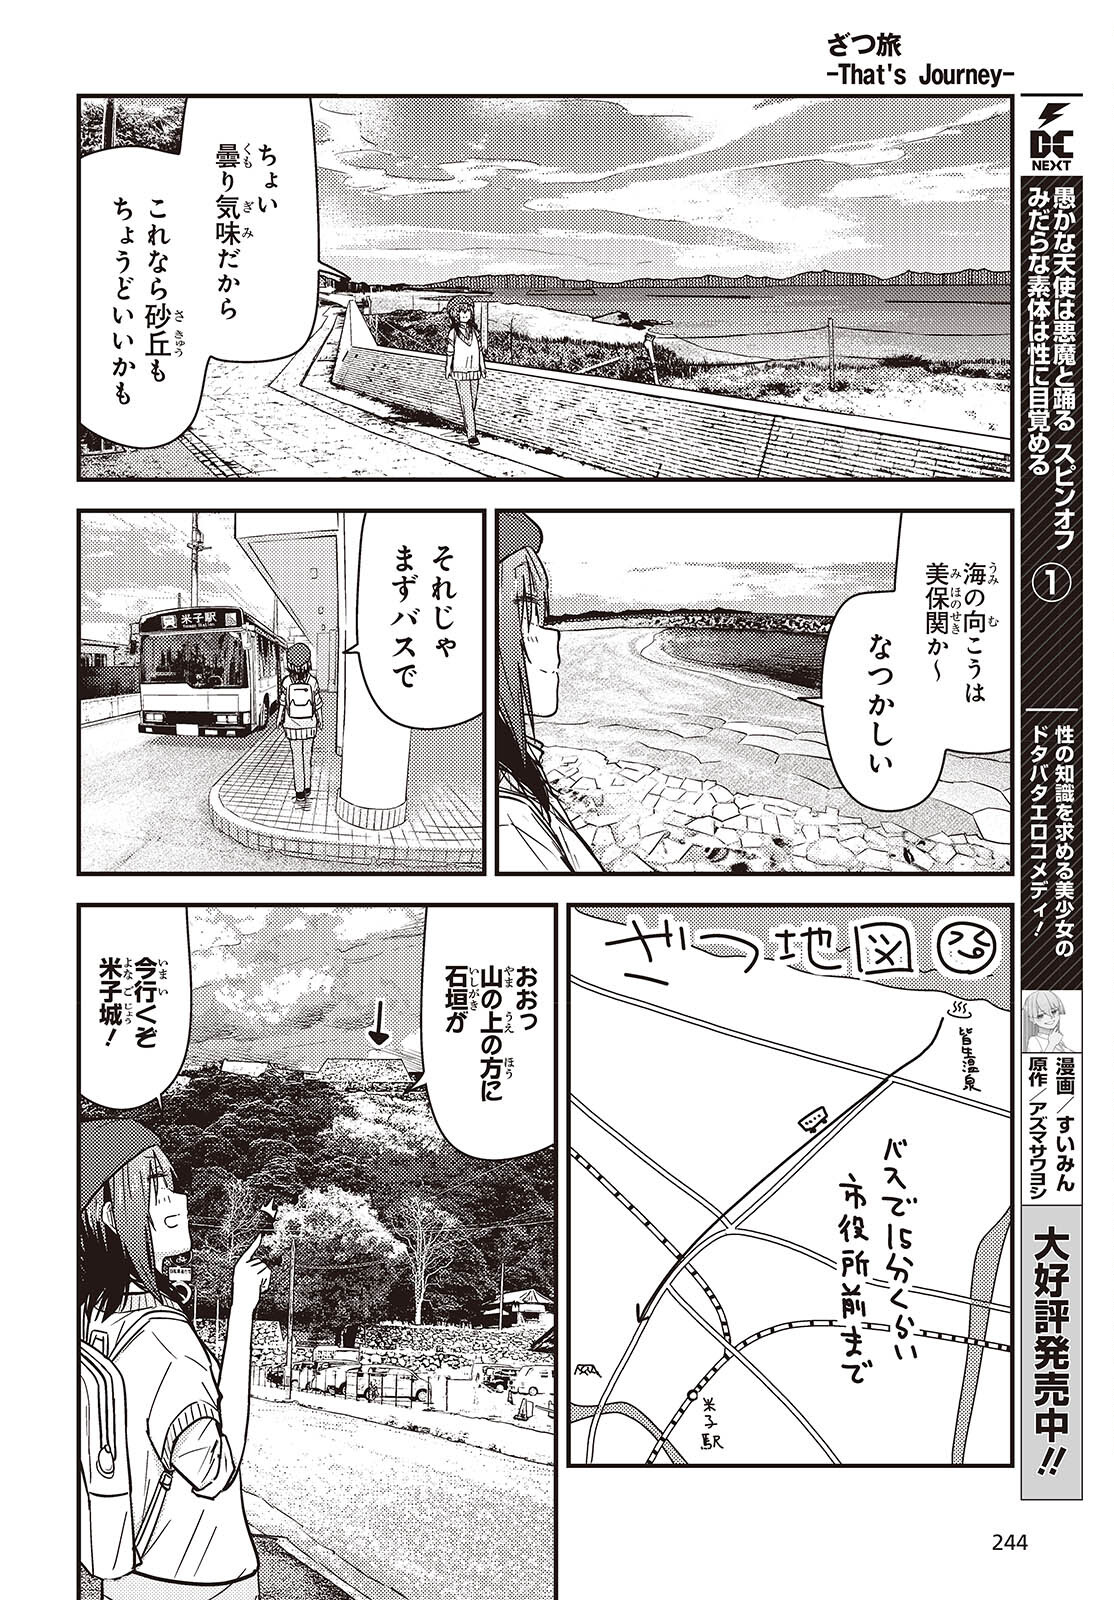 ざつ旅-That's Journey- 第37.6話 - Page 20